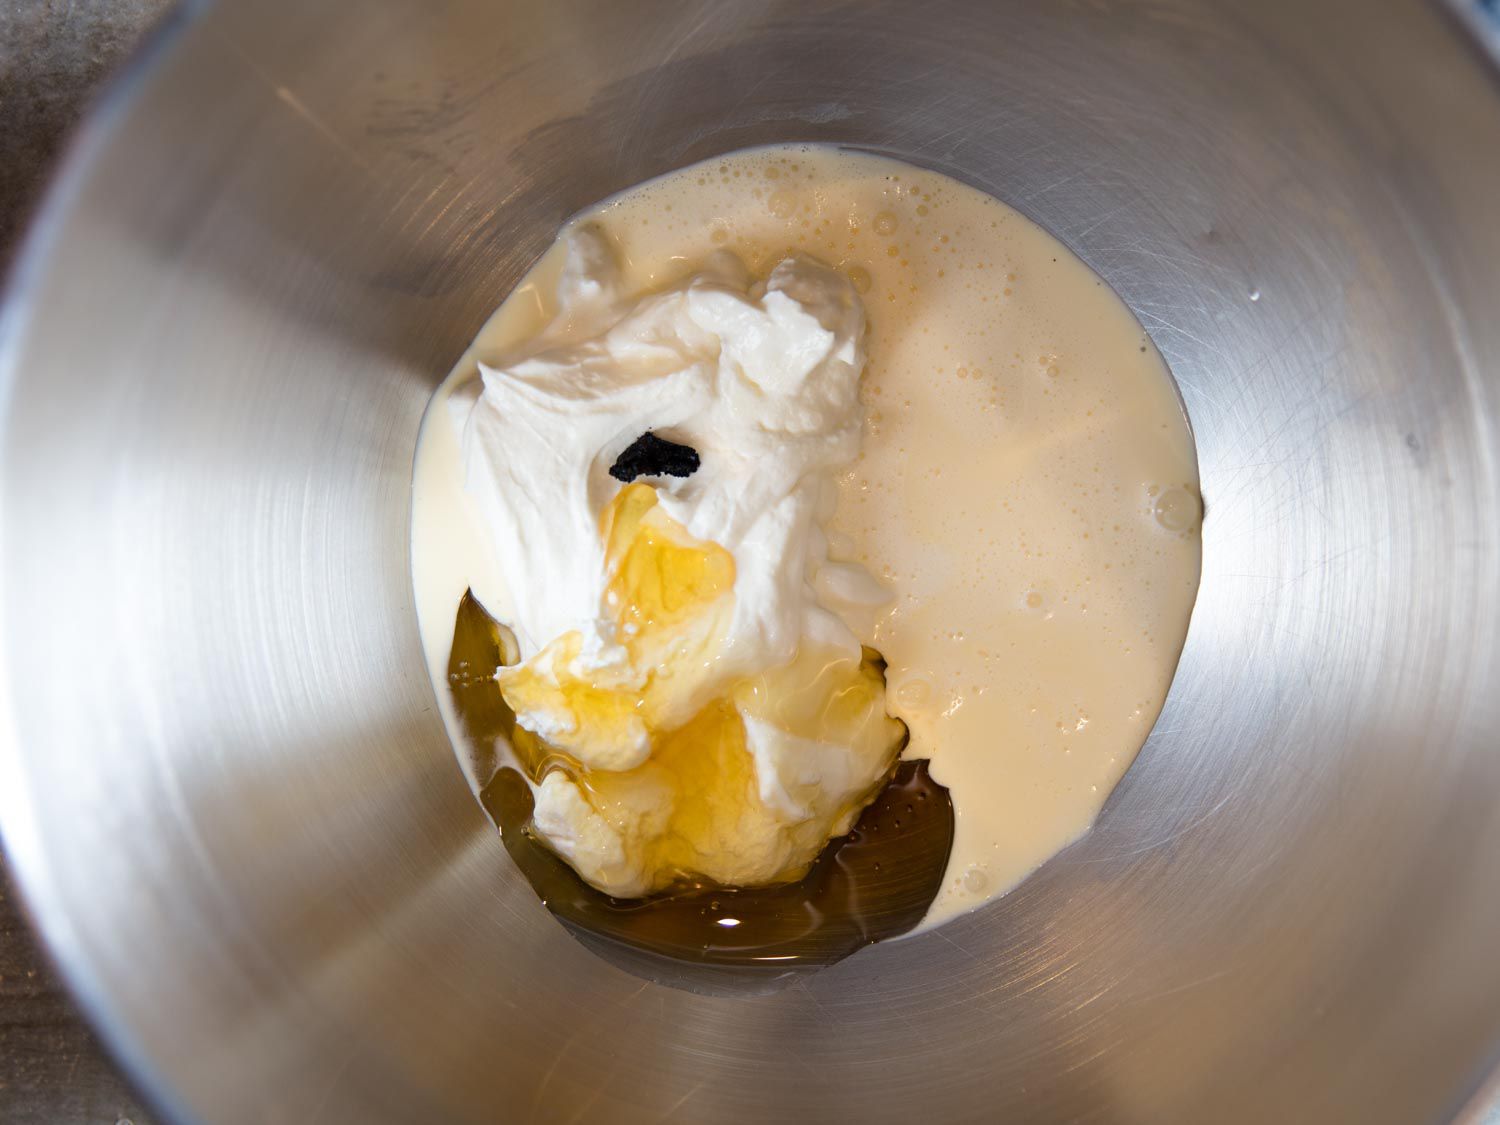 希腊酸奶、奶油、香草籽和金色糖浆放在一个金属碗里gydF4y2Ba